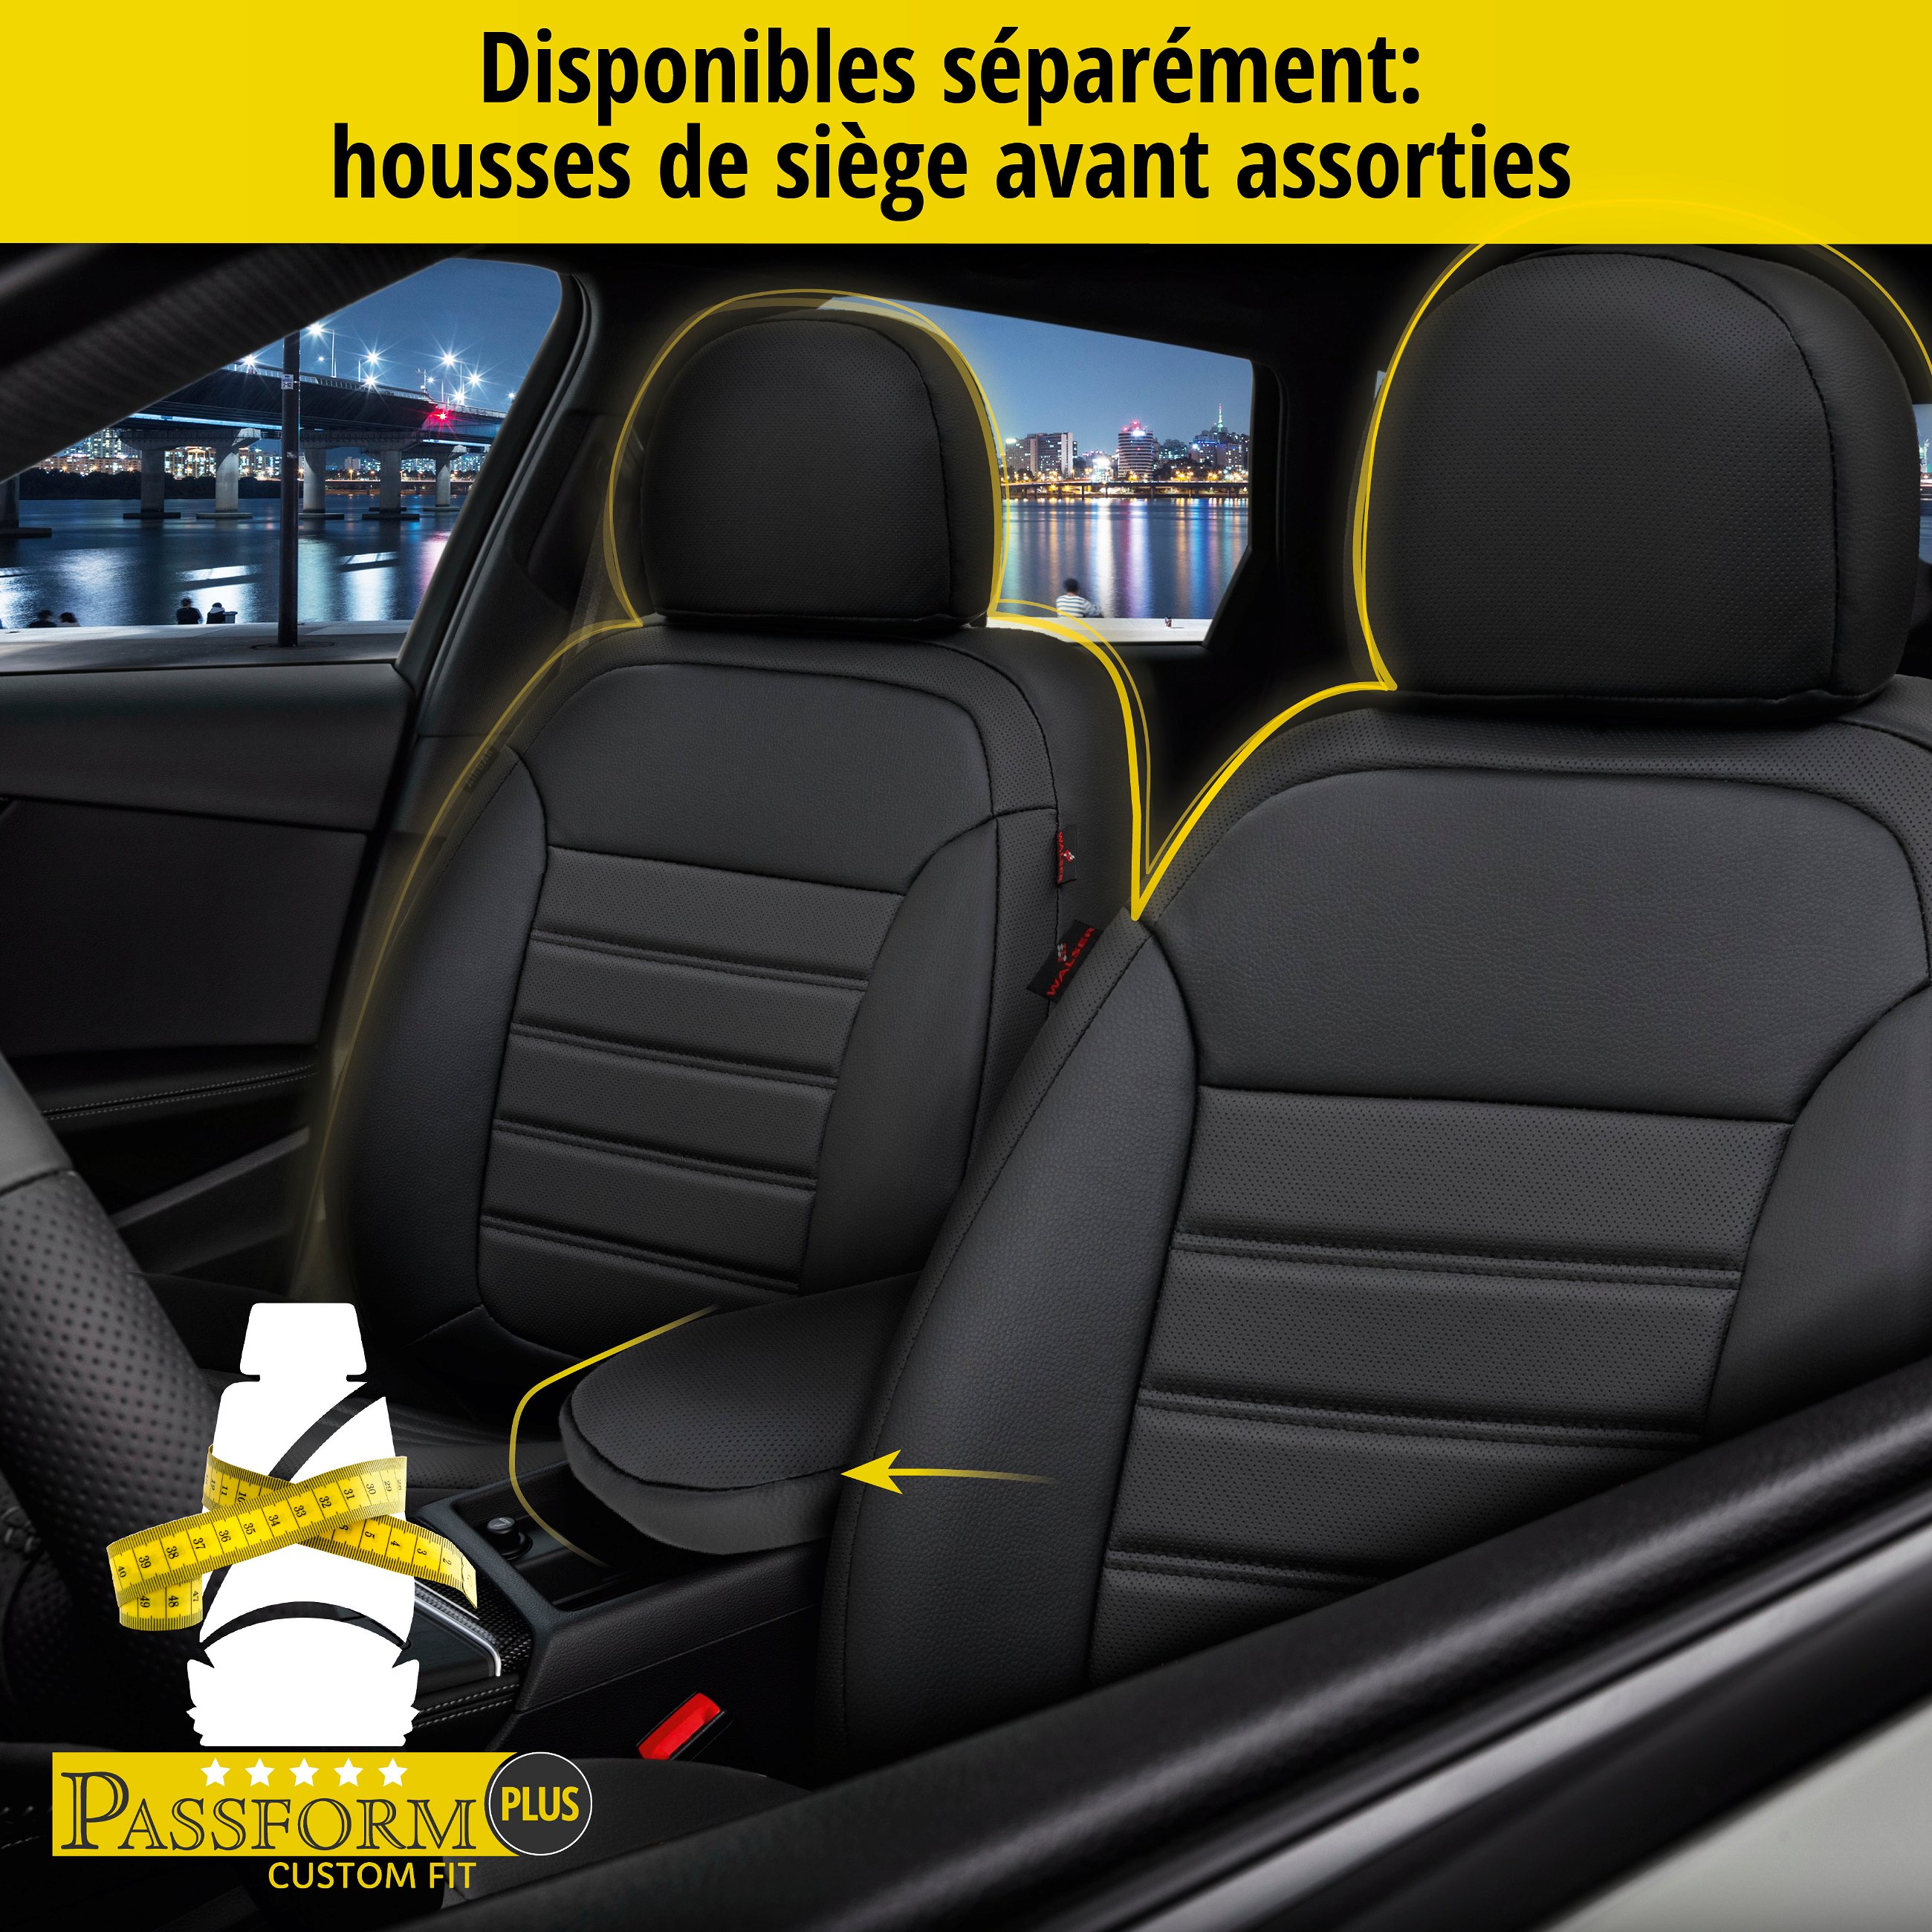 Housse de siège Robusto pour VW Caddy III Combi 2KB,2KJ,2CB 03/2004-05/2015, 1 housse de siège arrière pour les sièges normaux